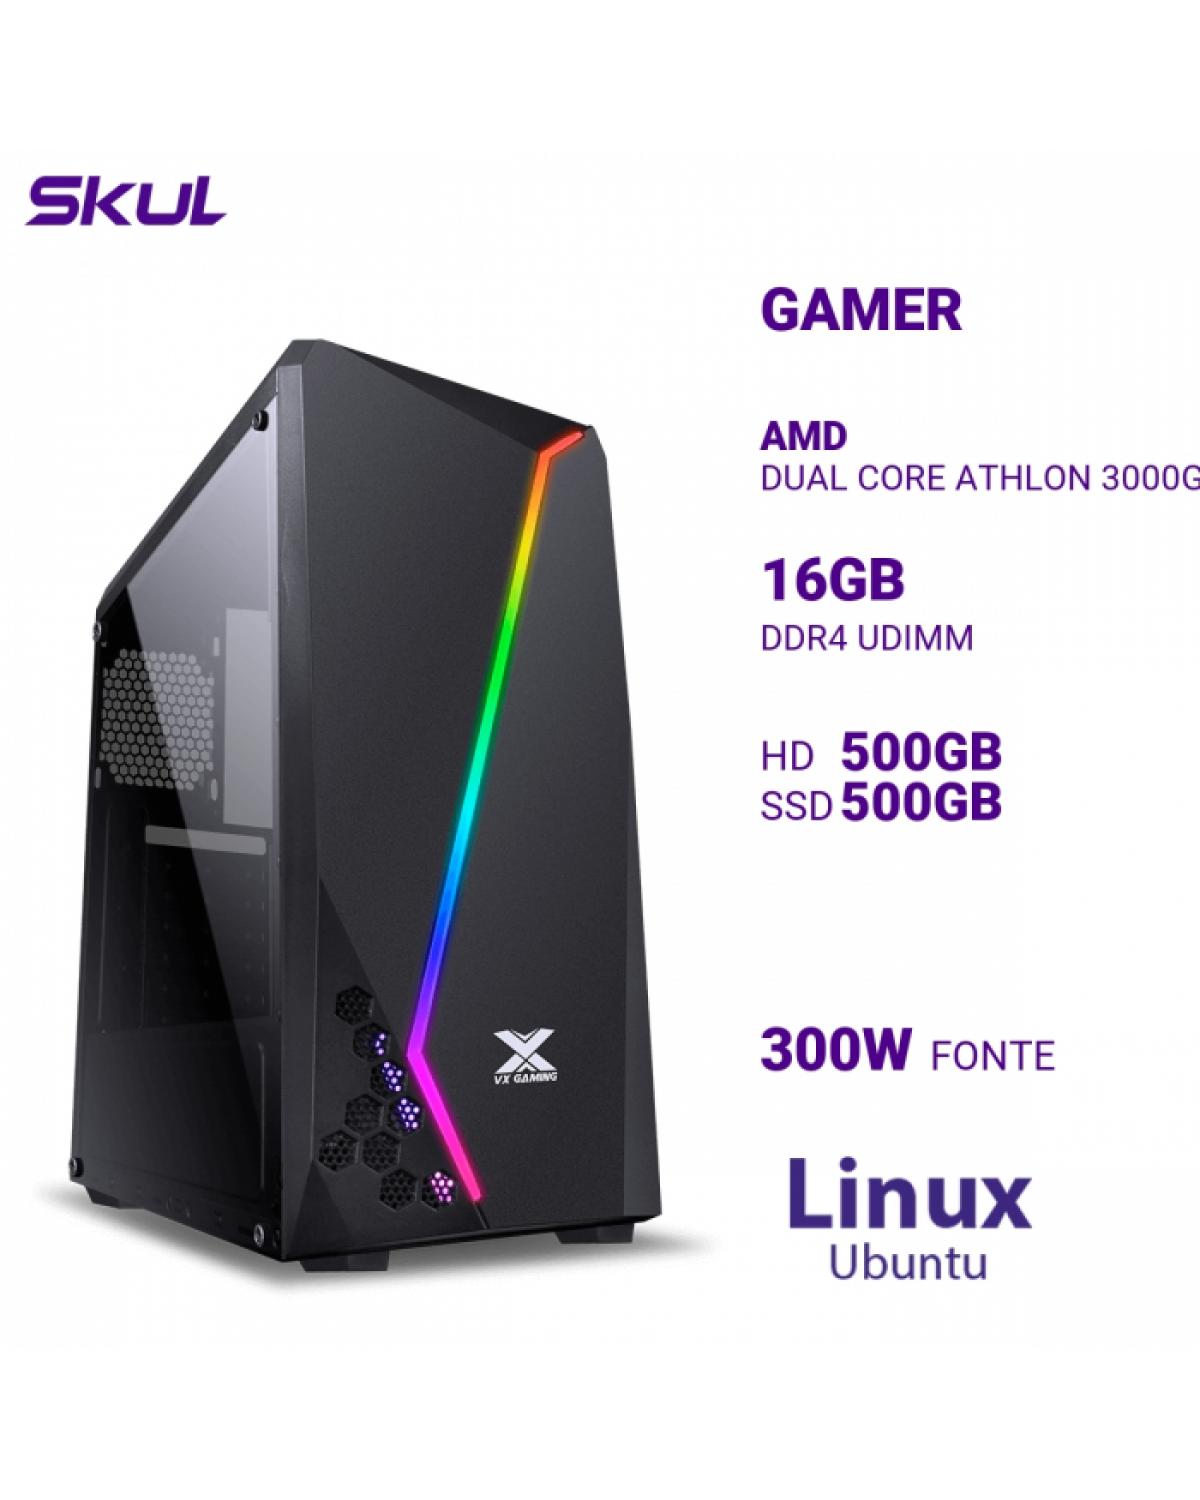 COMPUTADOR GAMER 1000 DUAL CORE ATHLON 3000G 3.50GHZ MEM 16GB DDR4 HD 500GB SSD 500GB NVME FONTE 300W LINUX